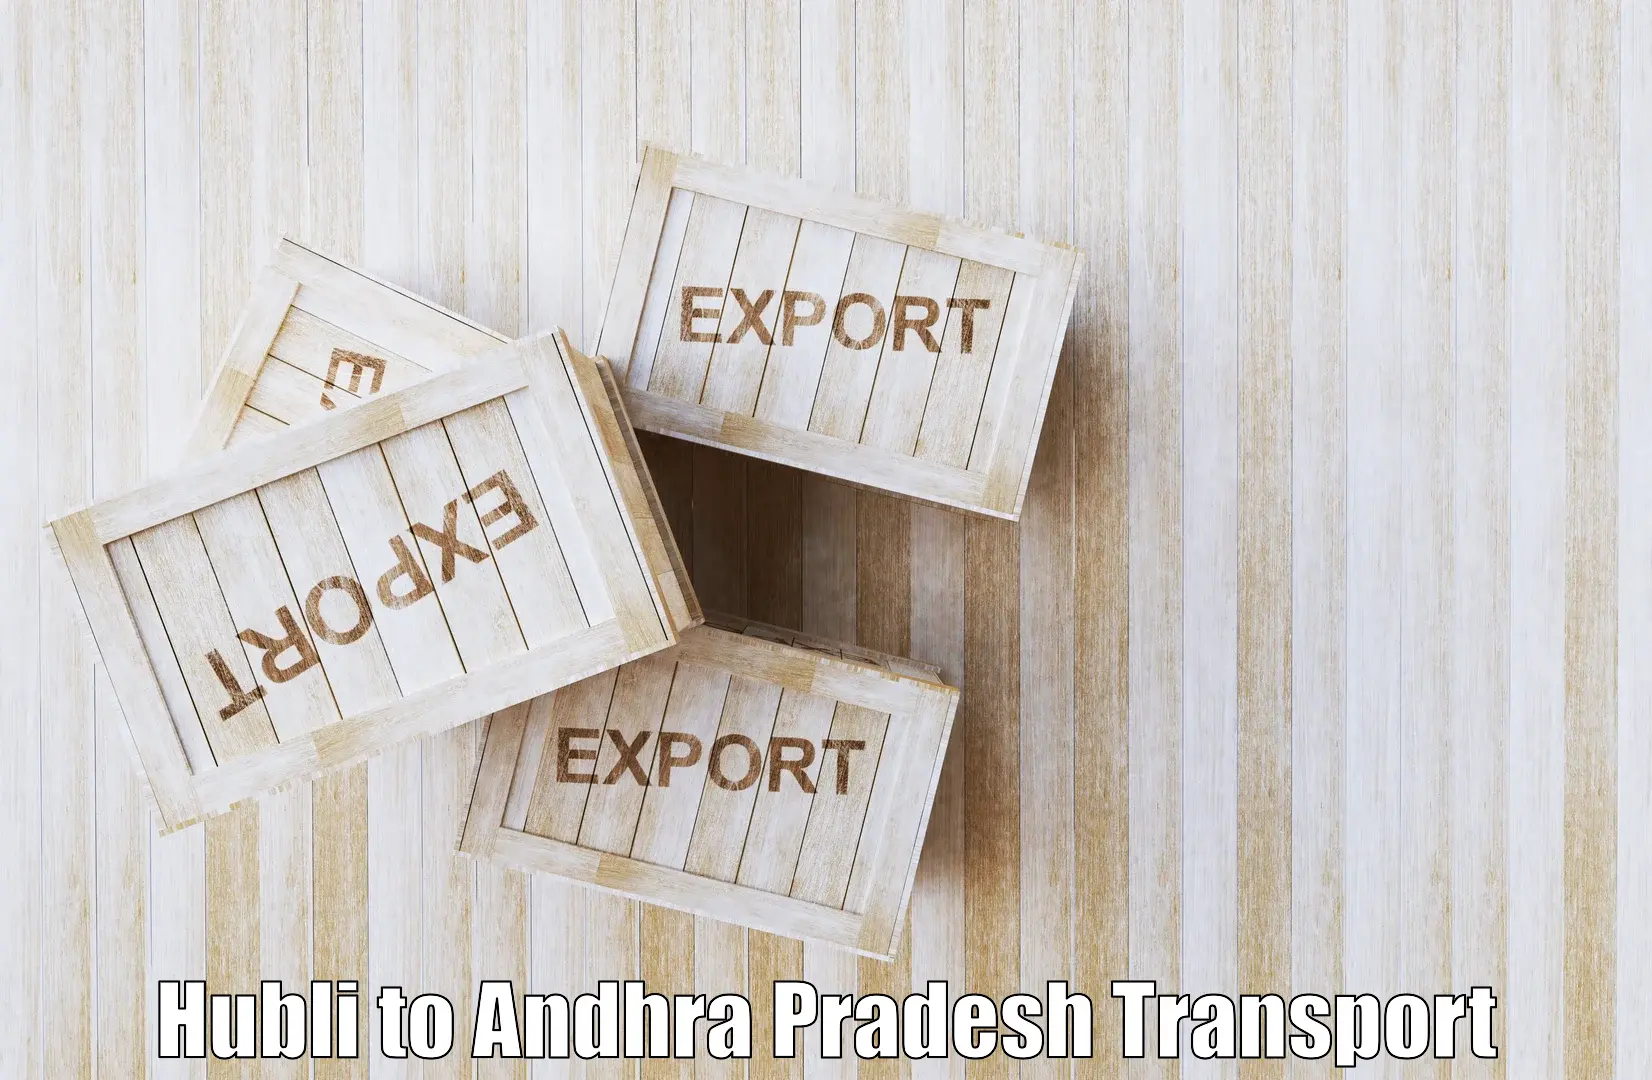 Domestic transport services in Hubli to Tirupati